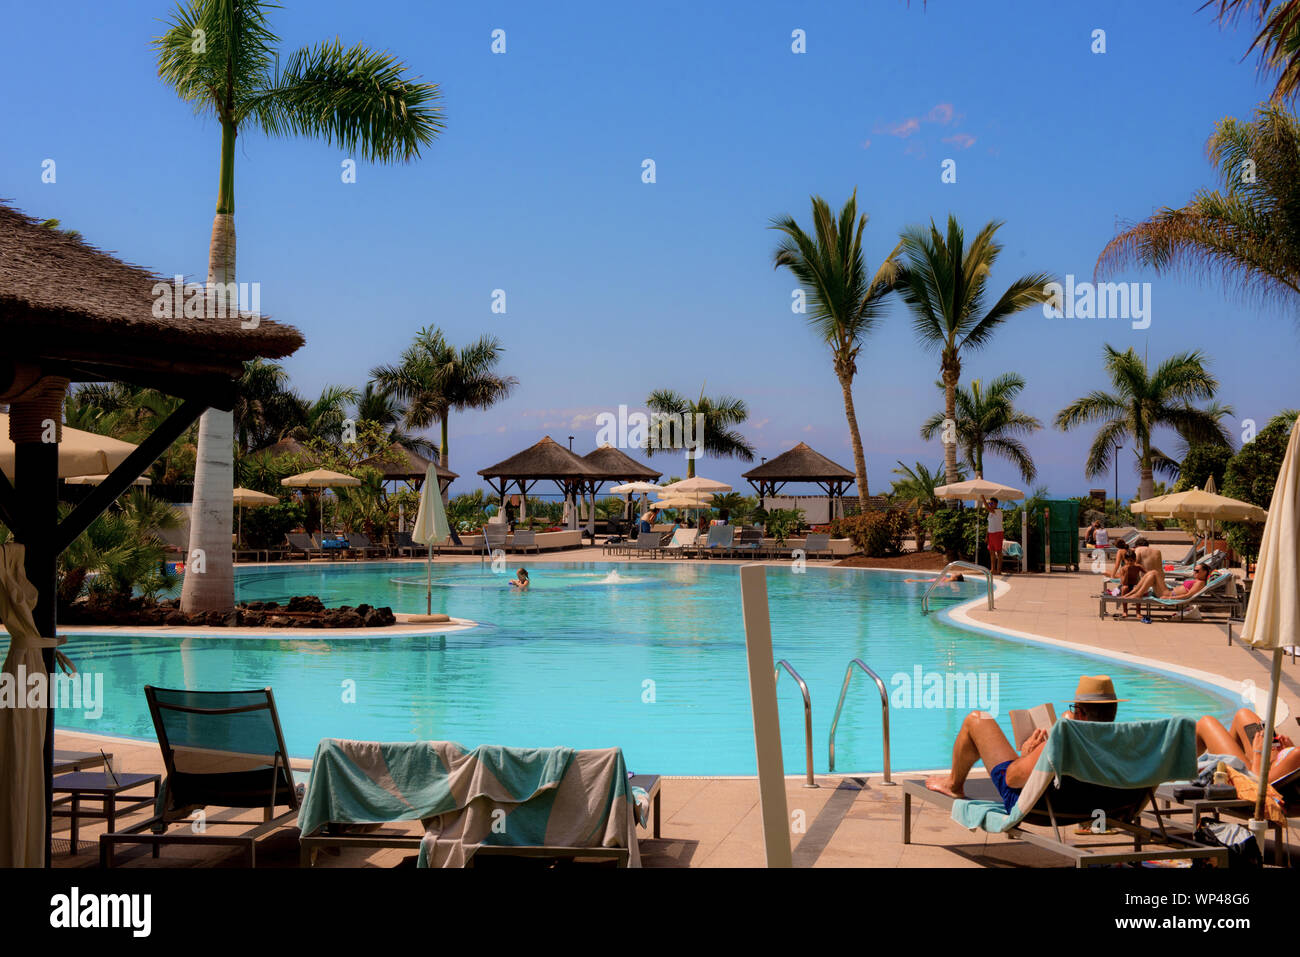 Tenerife, Isole Canarie, Spagna 6 ottobre 2018: Hotel di lusso sulla costa con palme, piscina Polonia turisti non identificati prendere il sole. Foto Stock